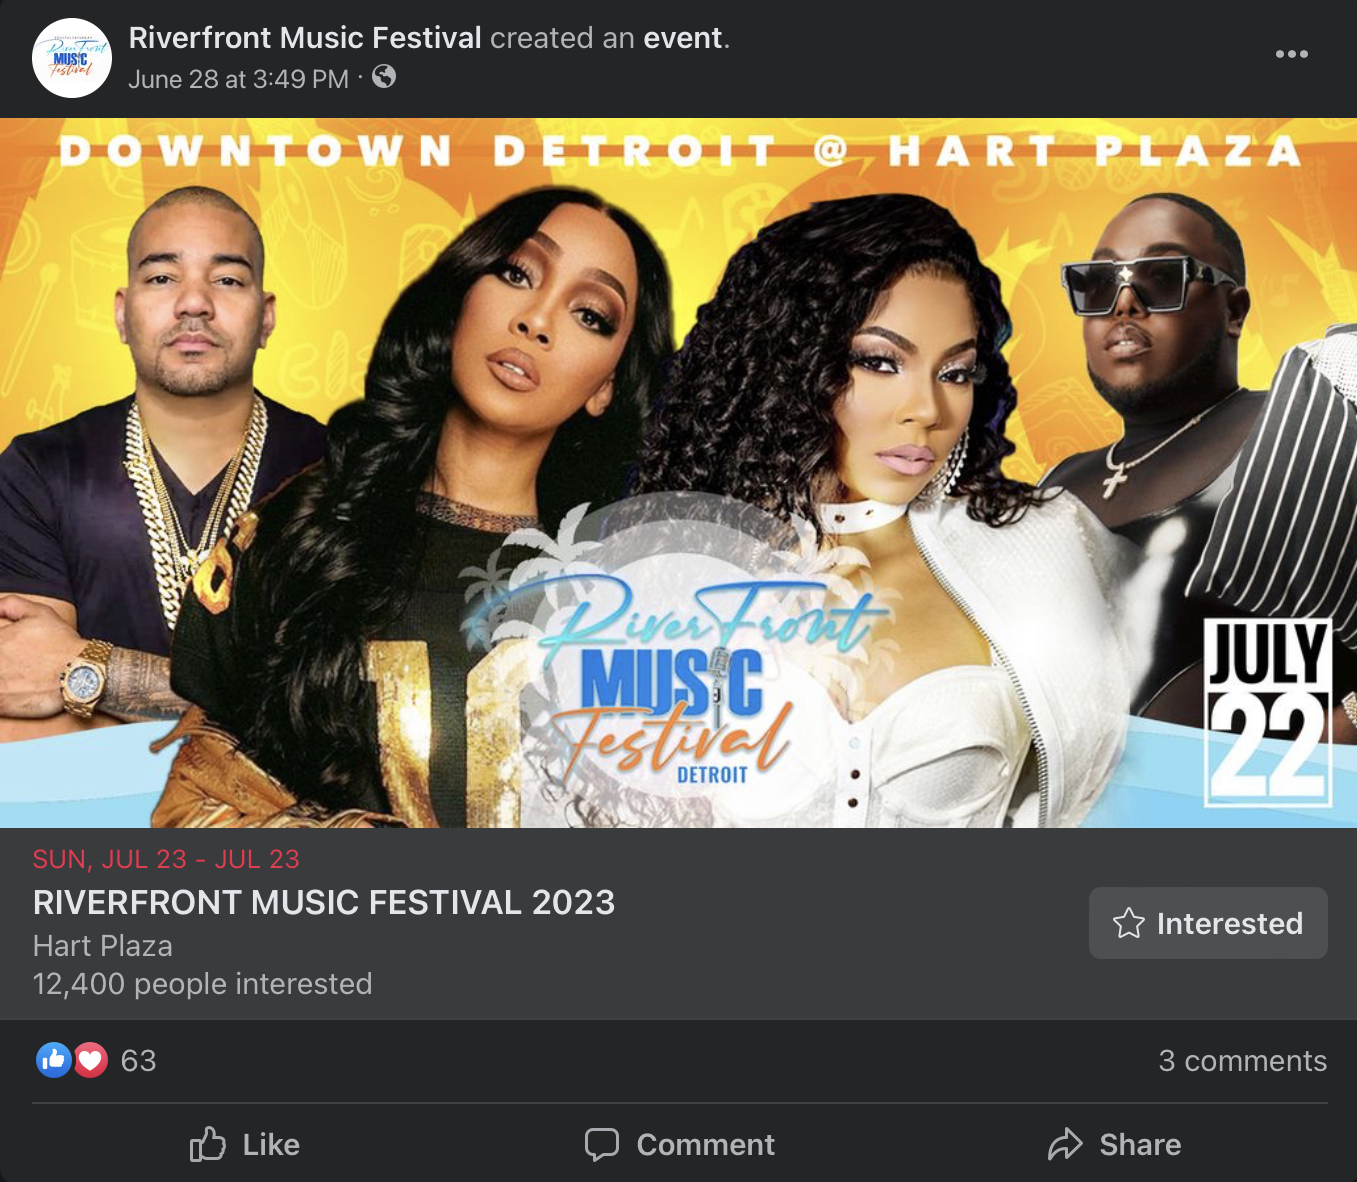 Facebook event ad music festival